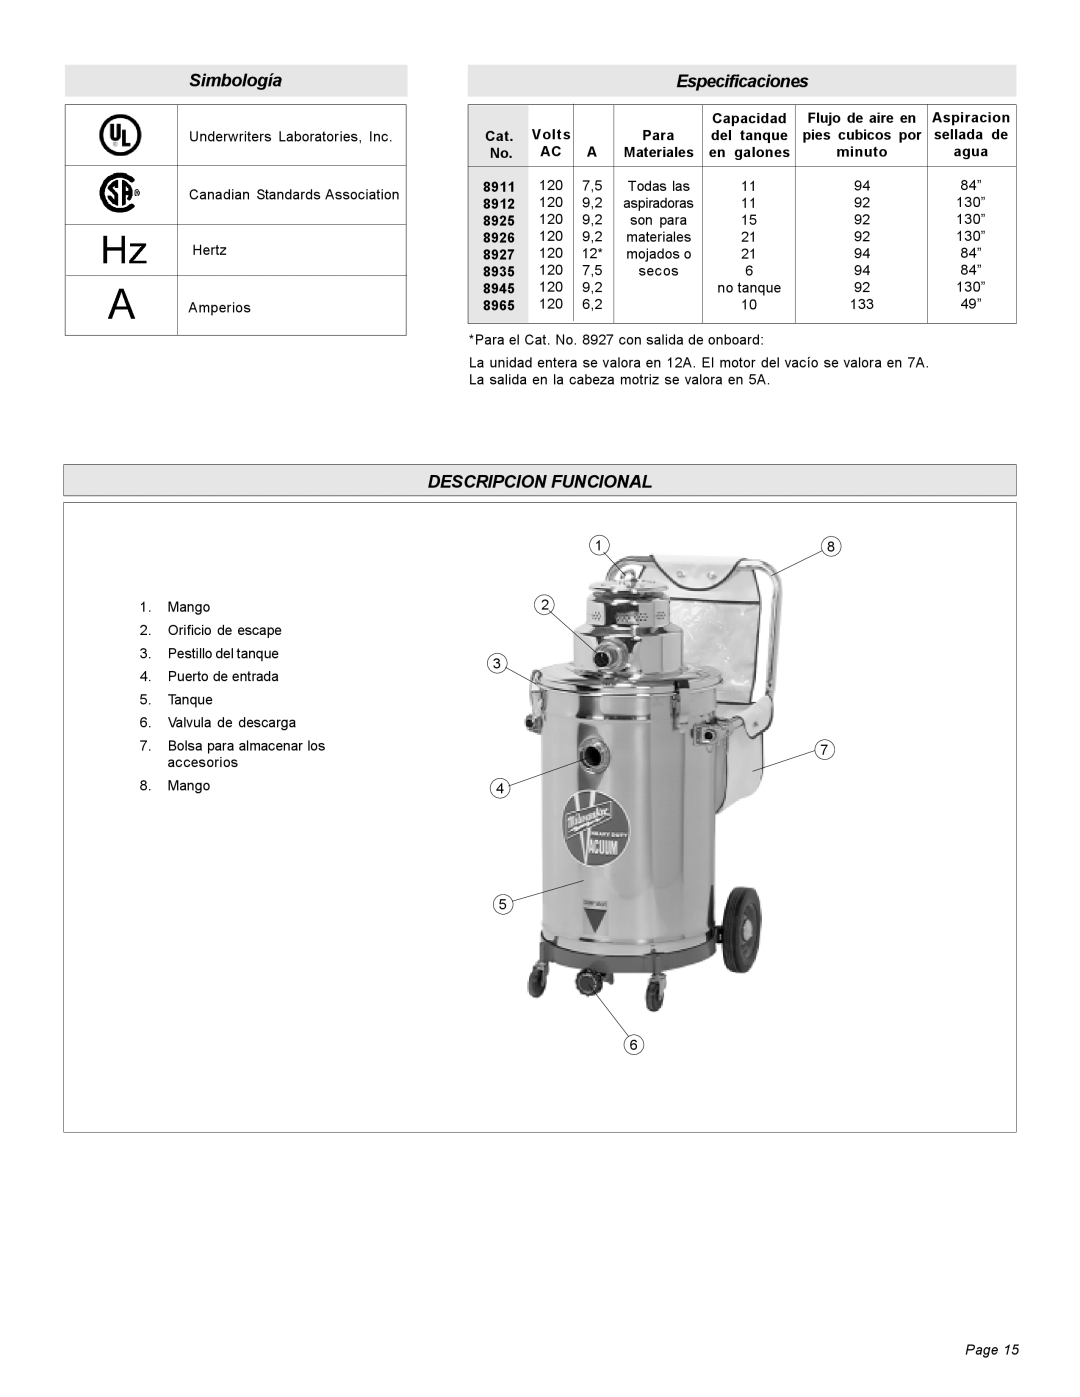 Milwaukee Heavy-Duty Commercial Vacuum manual Simbología, Especificaciones, Descripcion Funcional, Page 